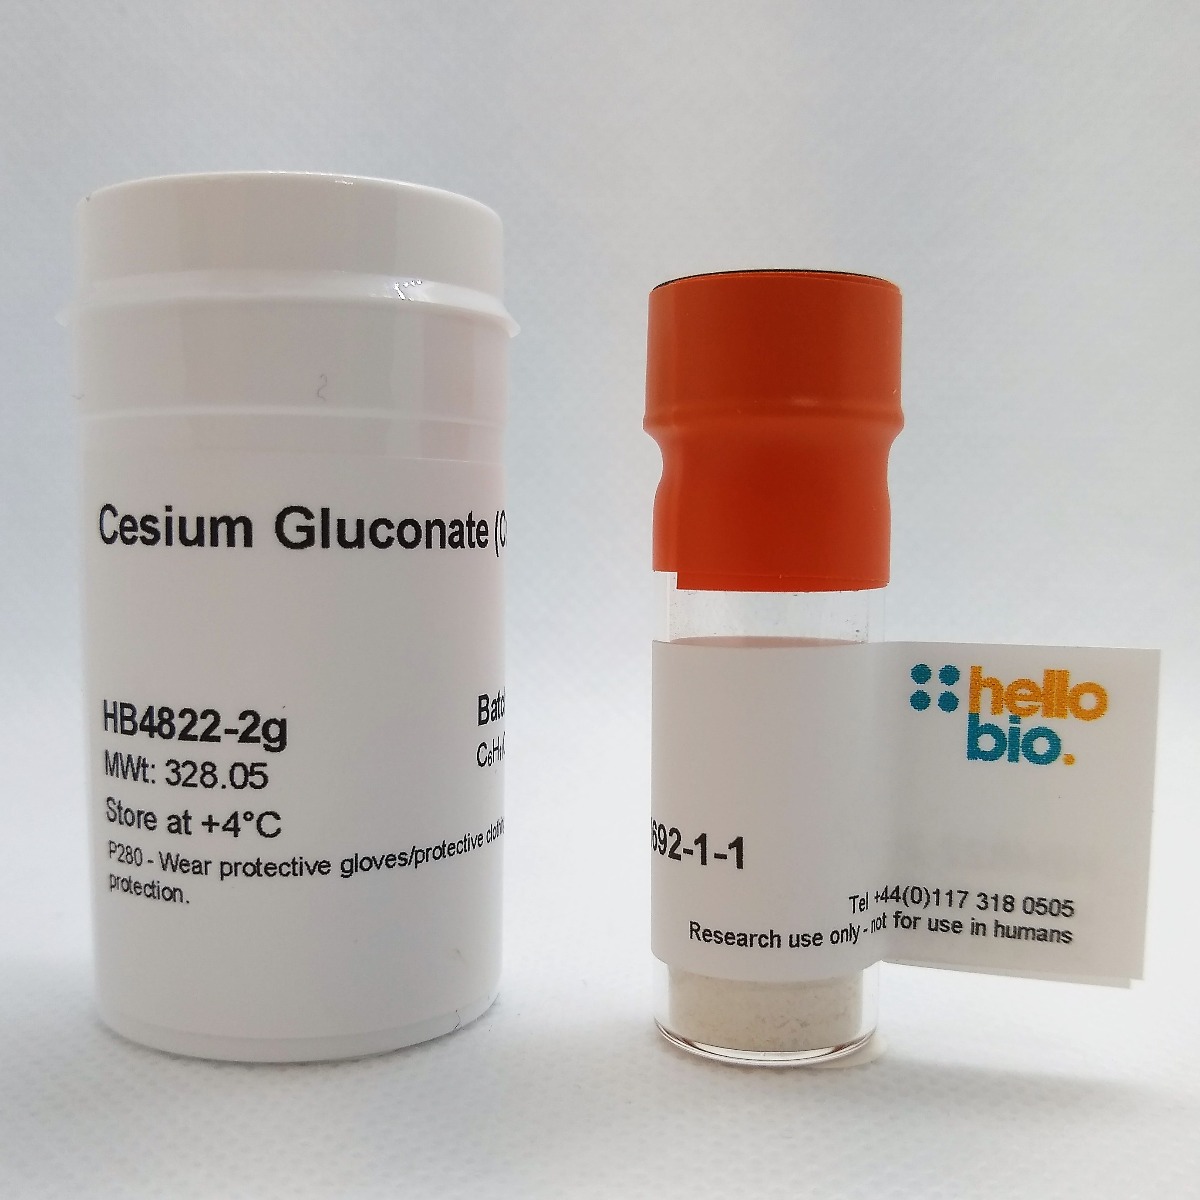 Cesium Gluconate (Cs-Gluc) product vial image | Hello Bio